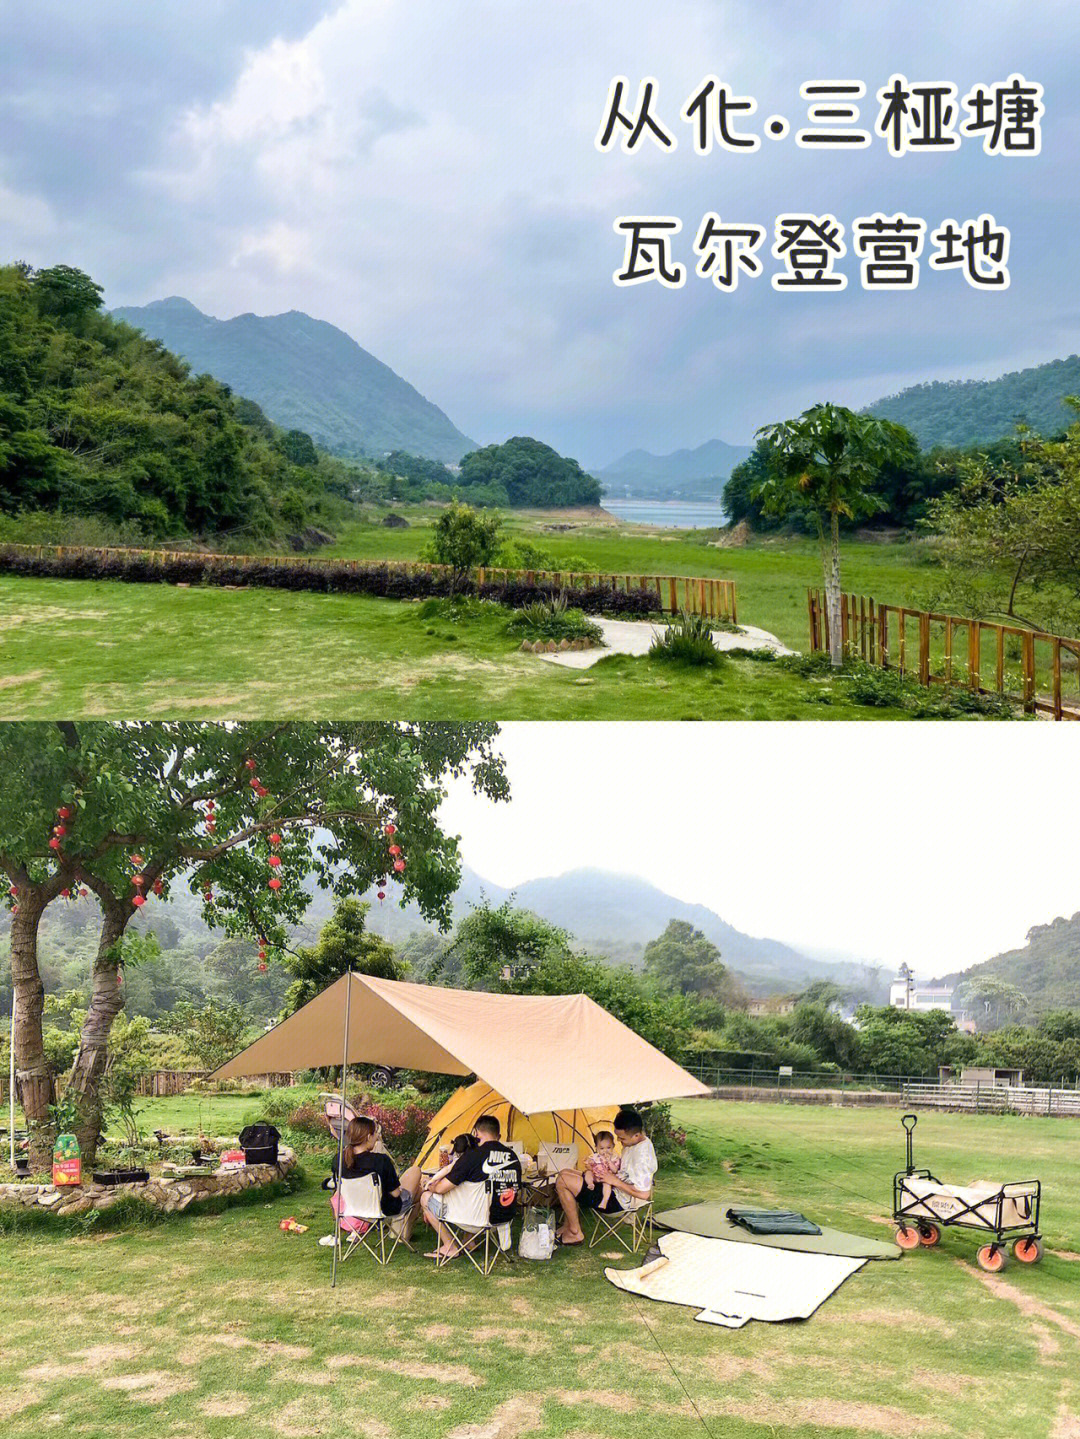 广州从化三桠塘瓦尔登营地露营亲子游